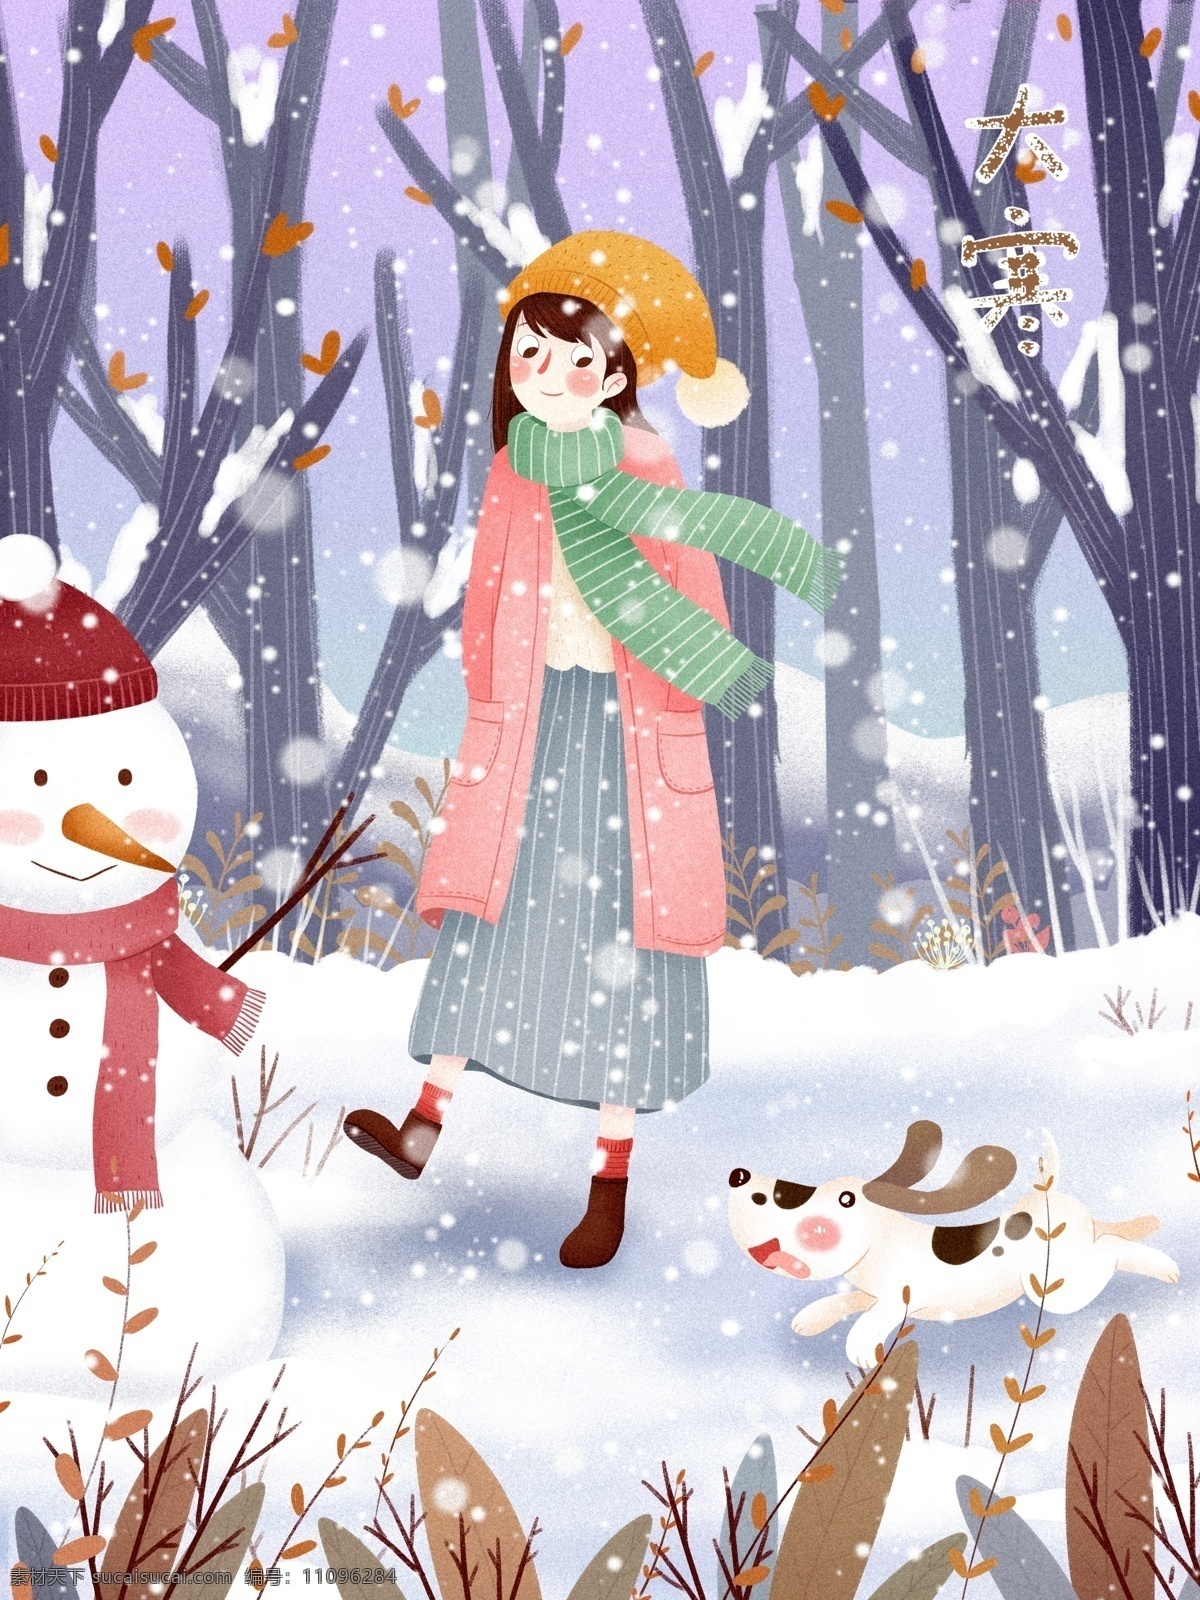 大寒 节气 下雪 冬天 森林 女孩 插画 唯美 清新 红色 雪花 雪天 树 白色 大衣 帽子 围巾 吹雪 雪地